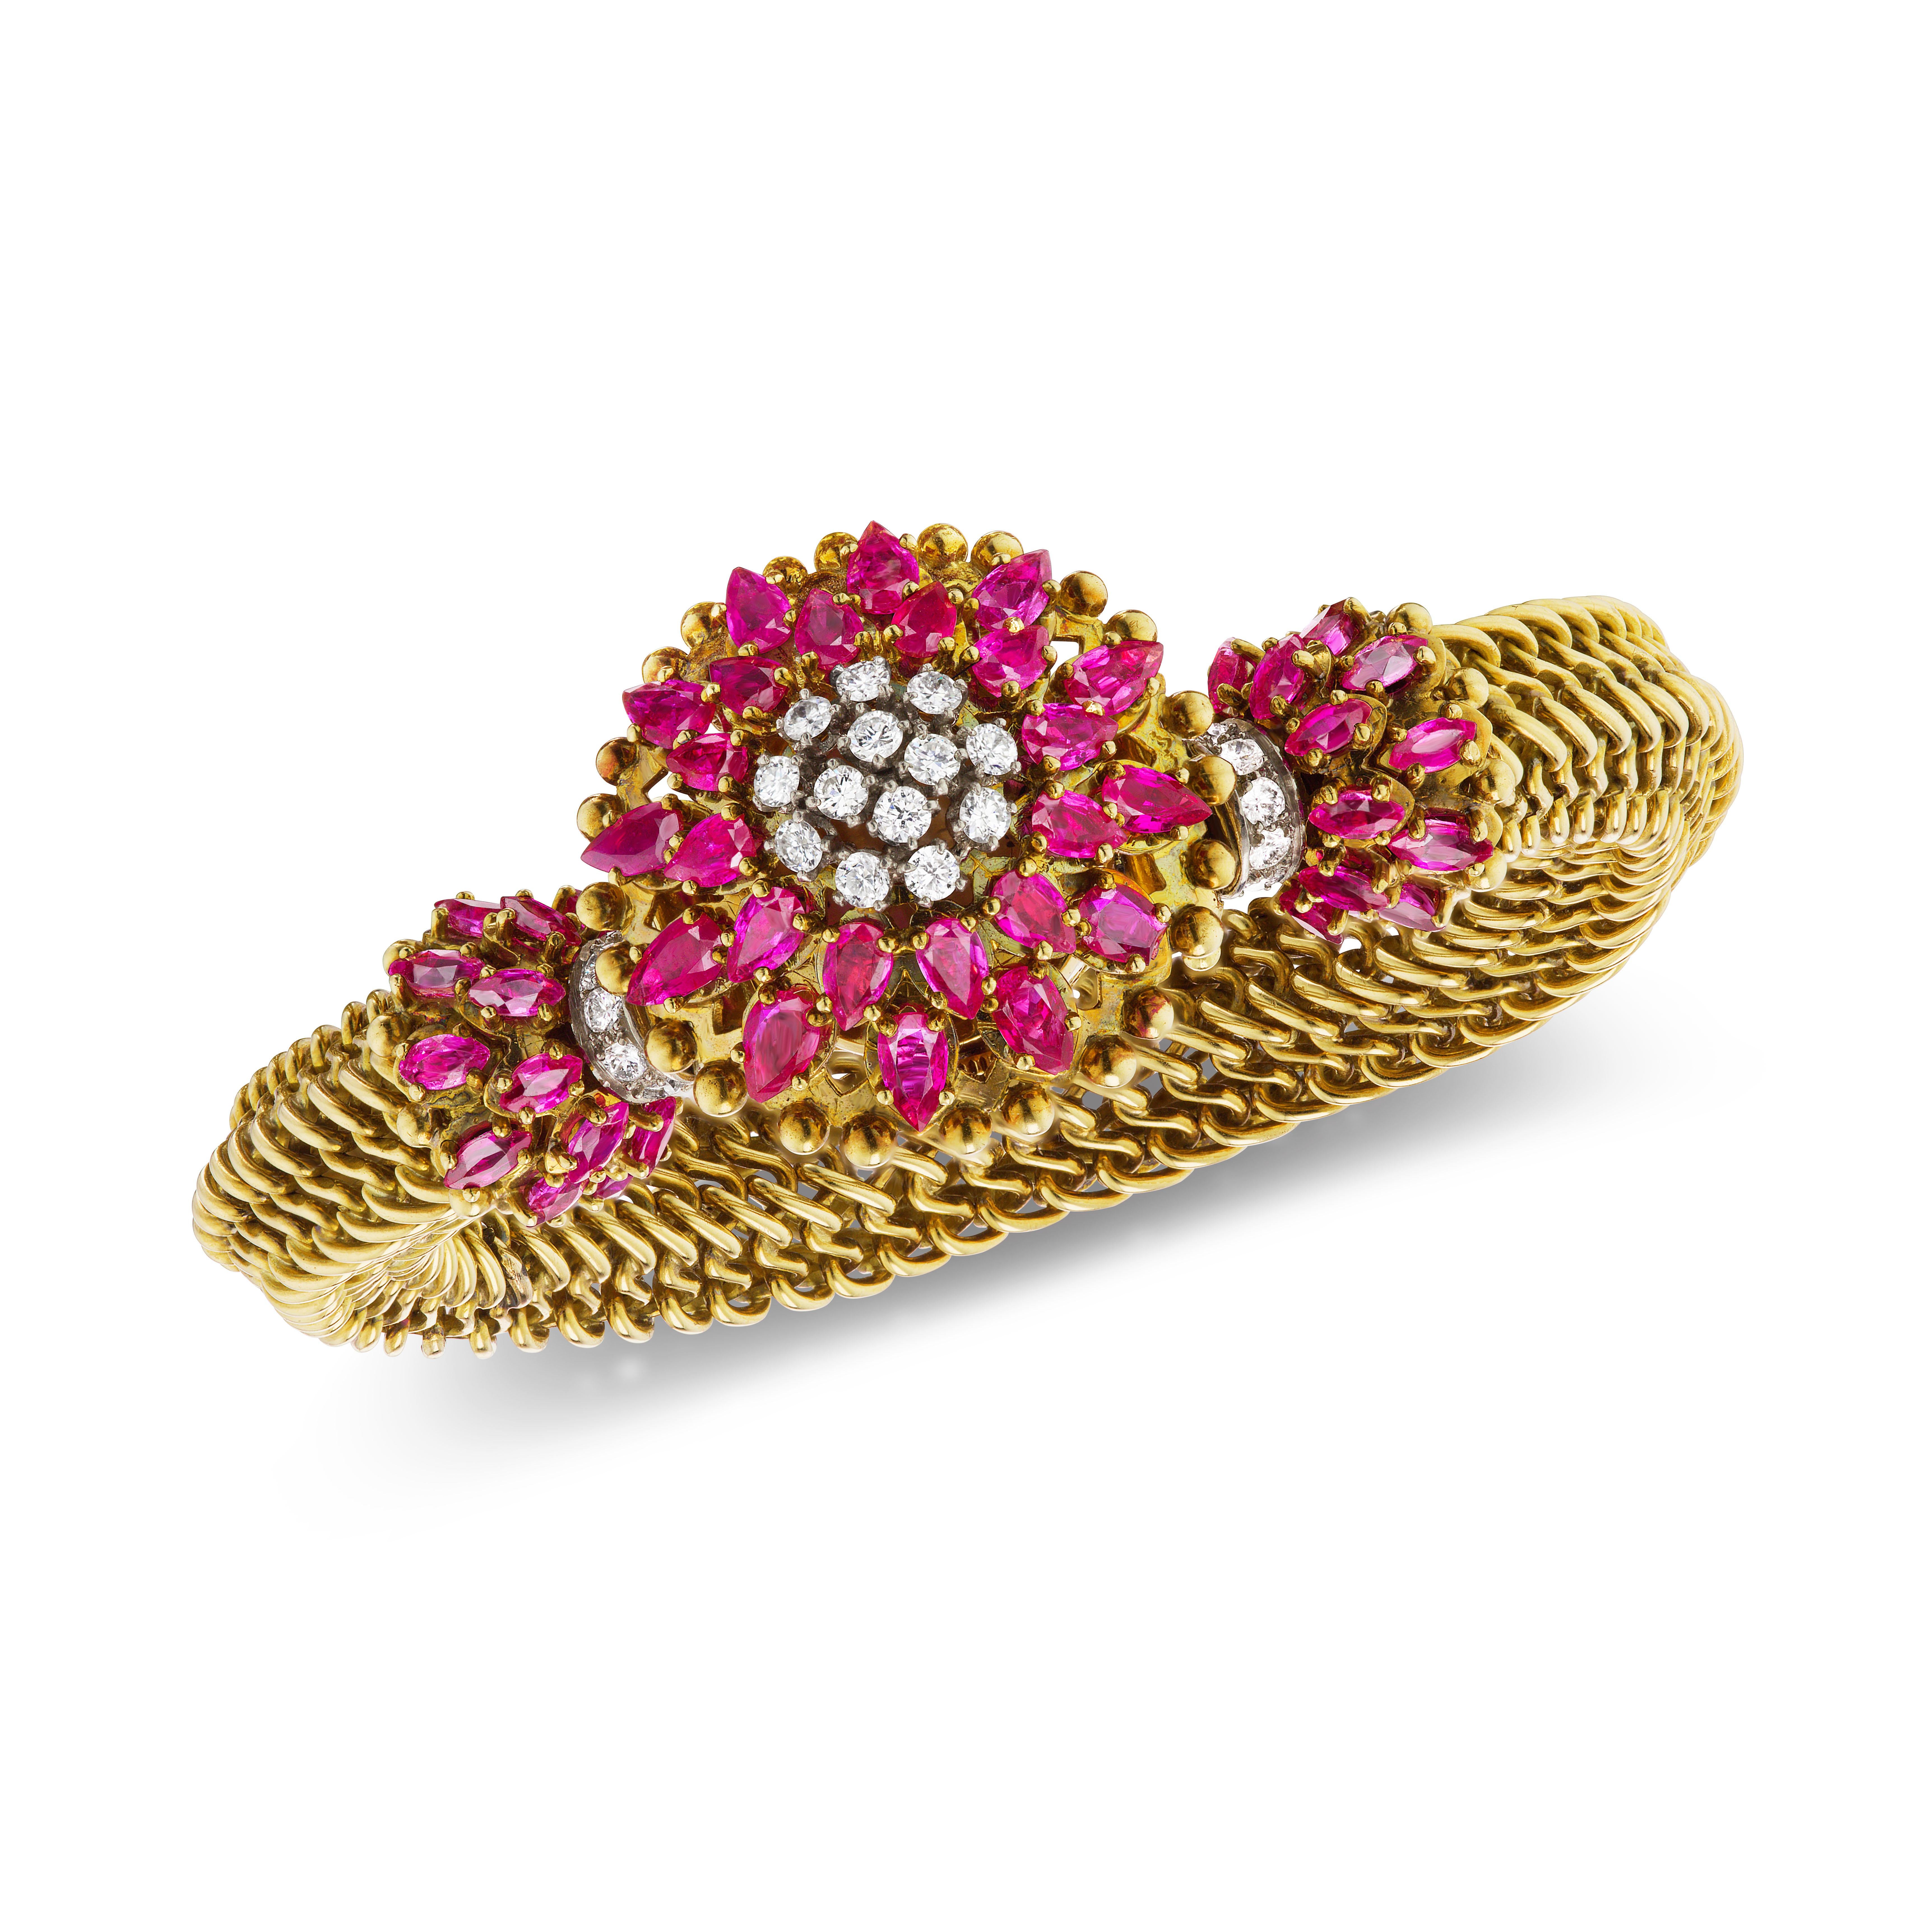 Ce fabuleux bracelet vintage en cotte de mailles en or 18 carats présente une montre couverte ornée de 24 rubis en forme de poire d'une qualité exceptionnelle et de 9 diamants ronds de taille brillant. Il y a 26 rubis ovales supplémentaires et 10